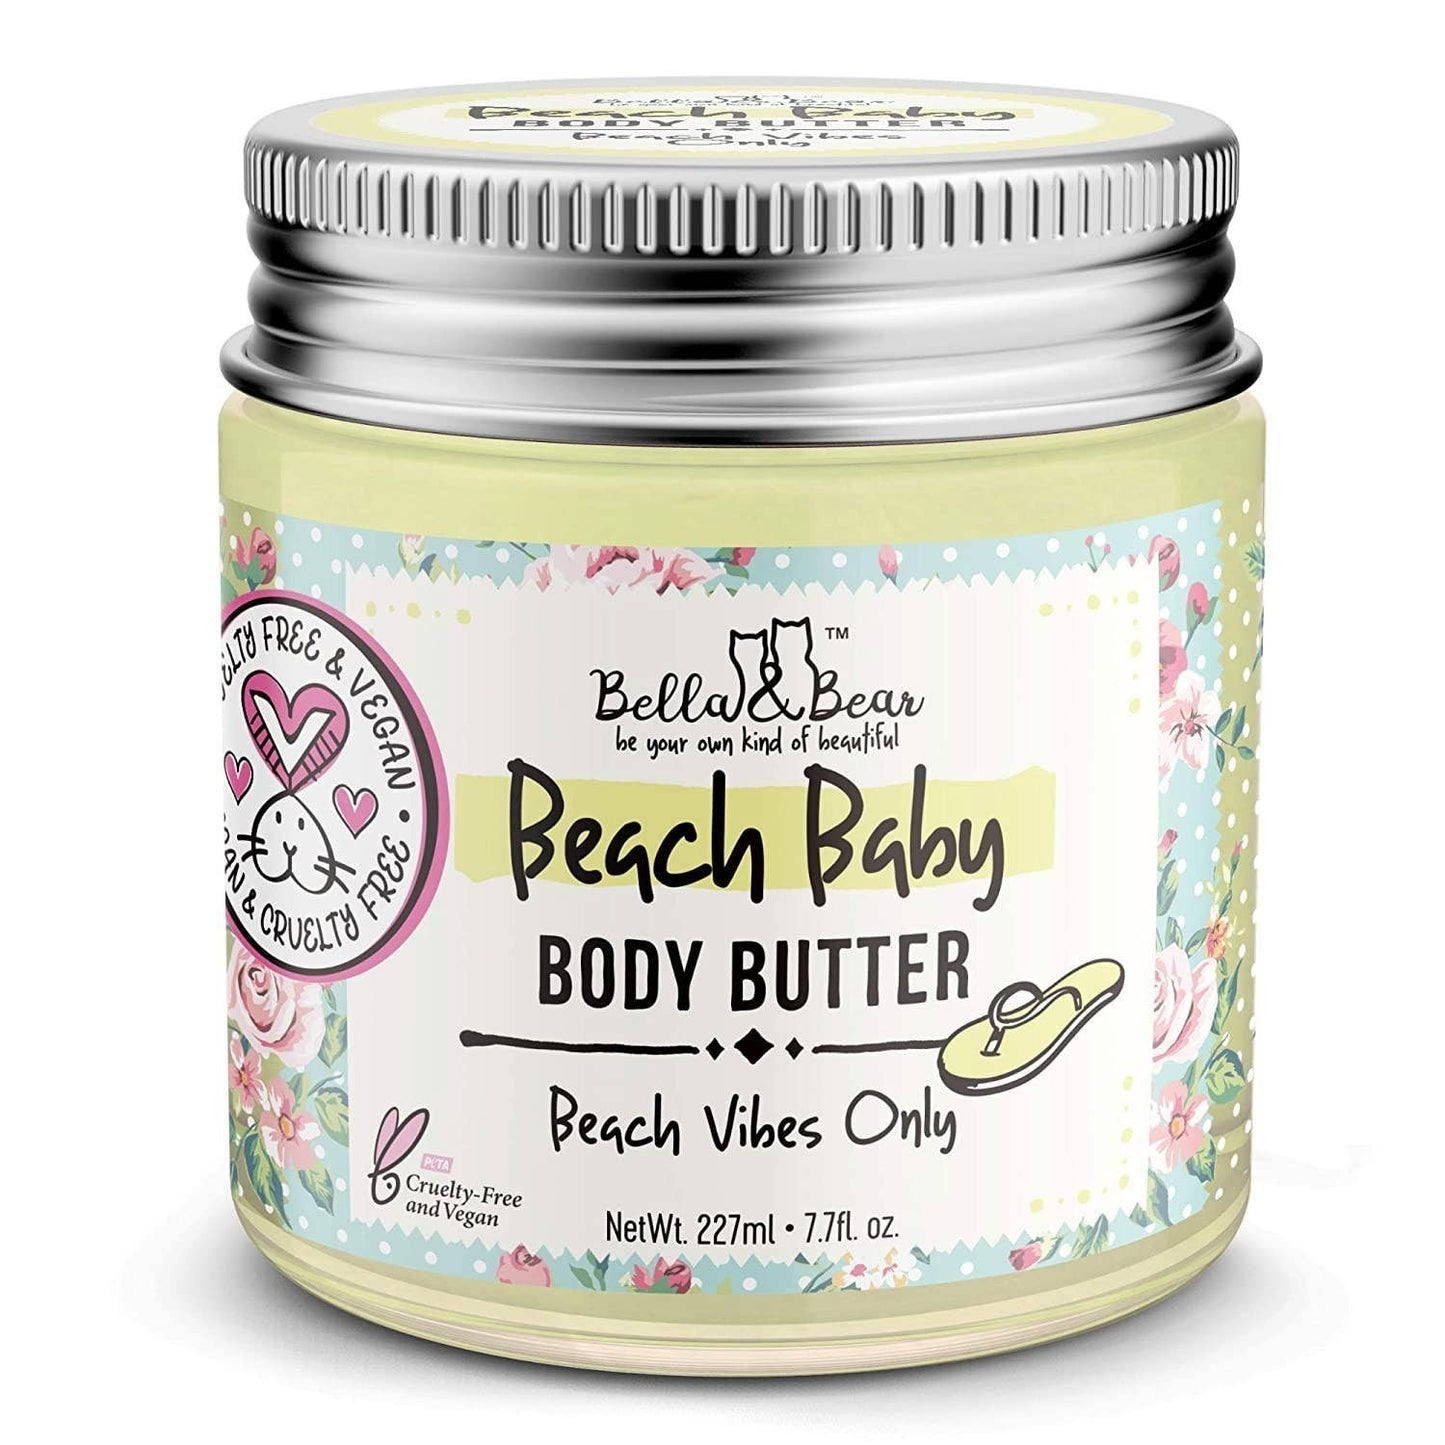 Beach Baby Body Butter